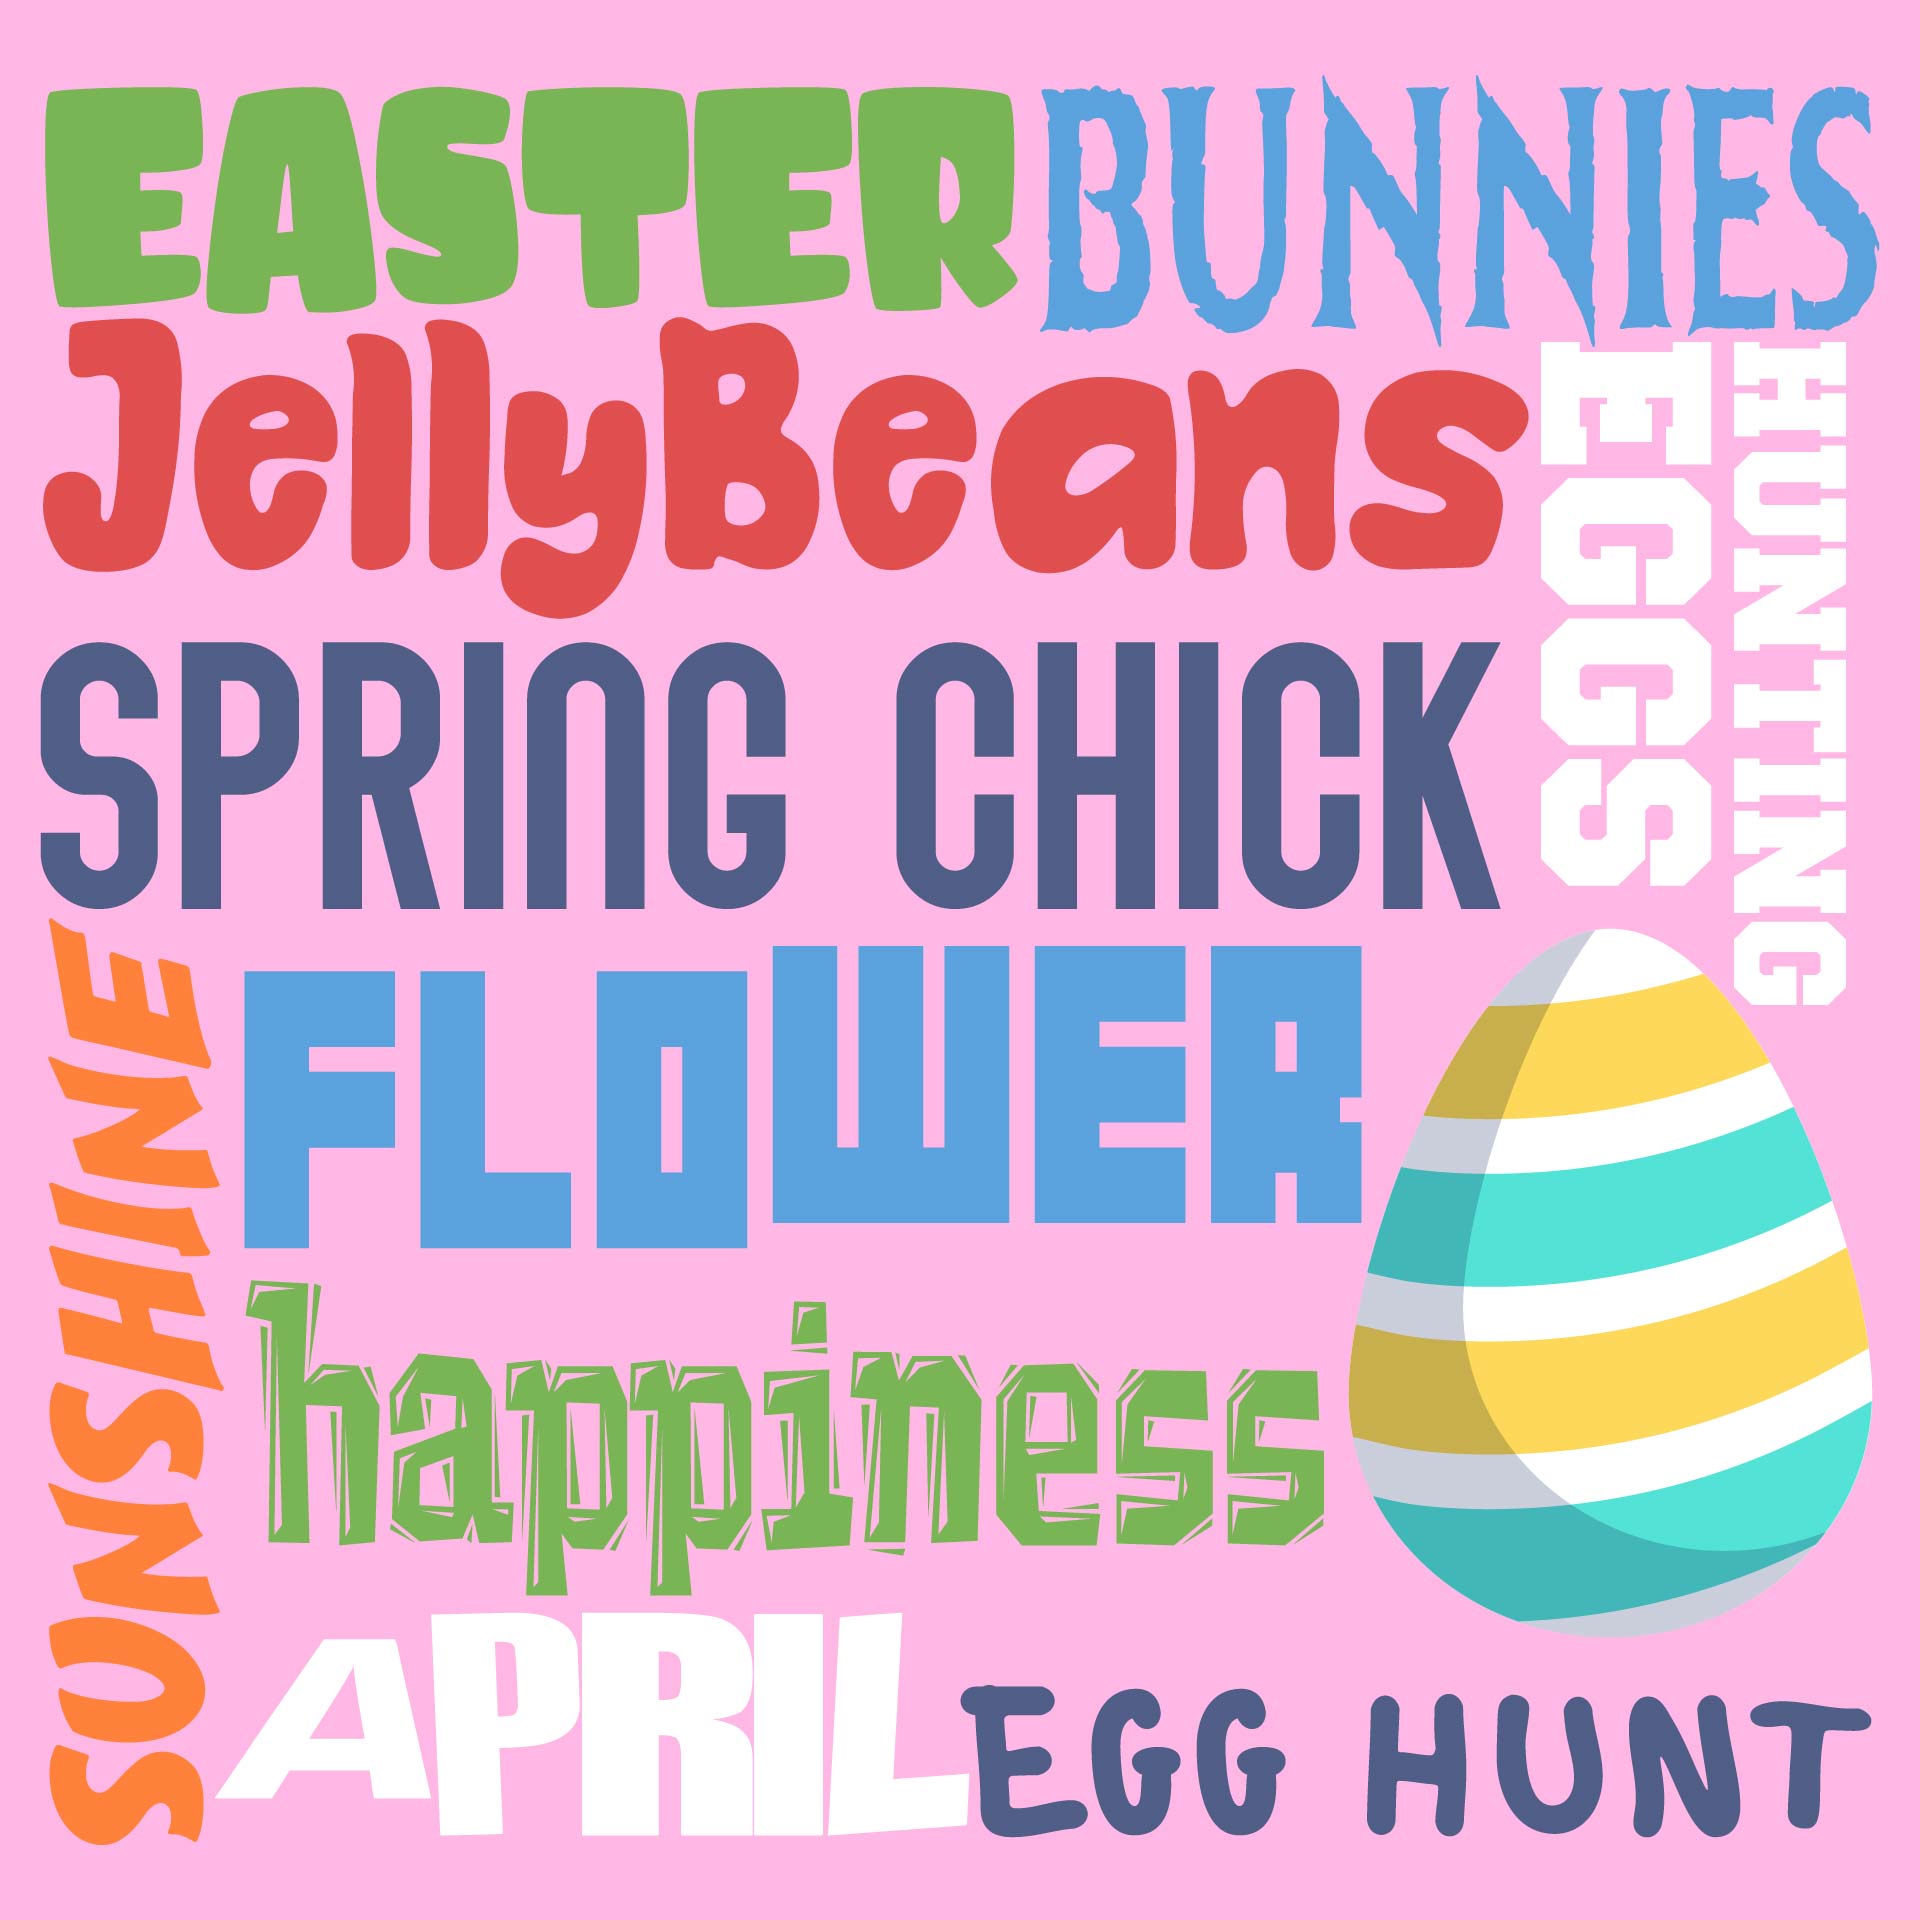 Printable Subway Art Easter Bunny